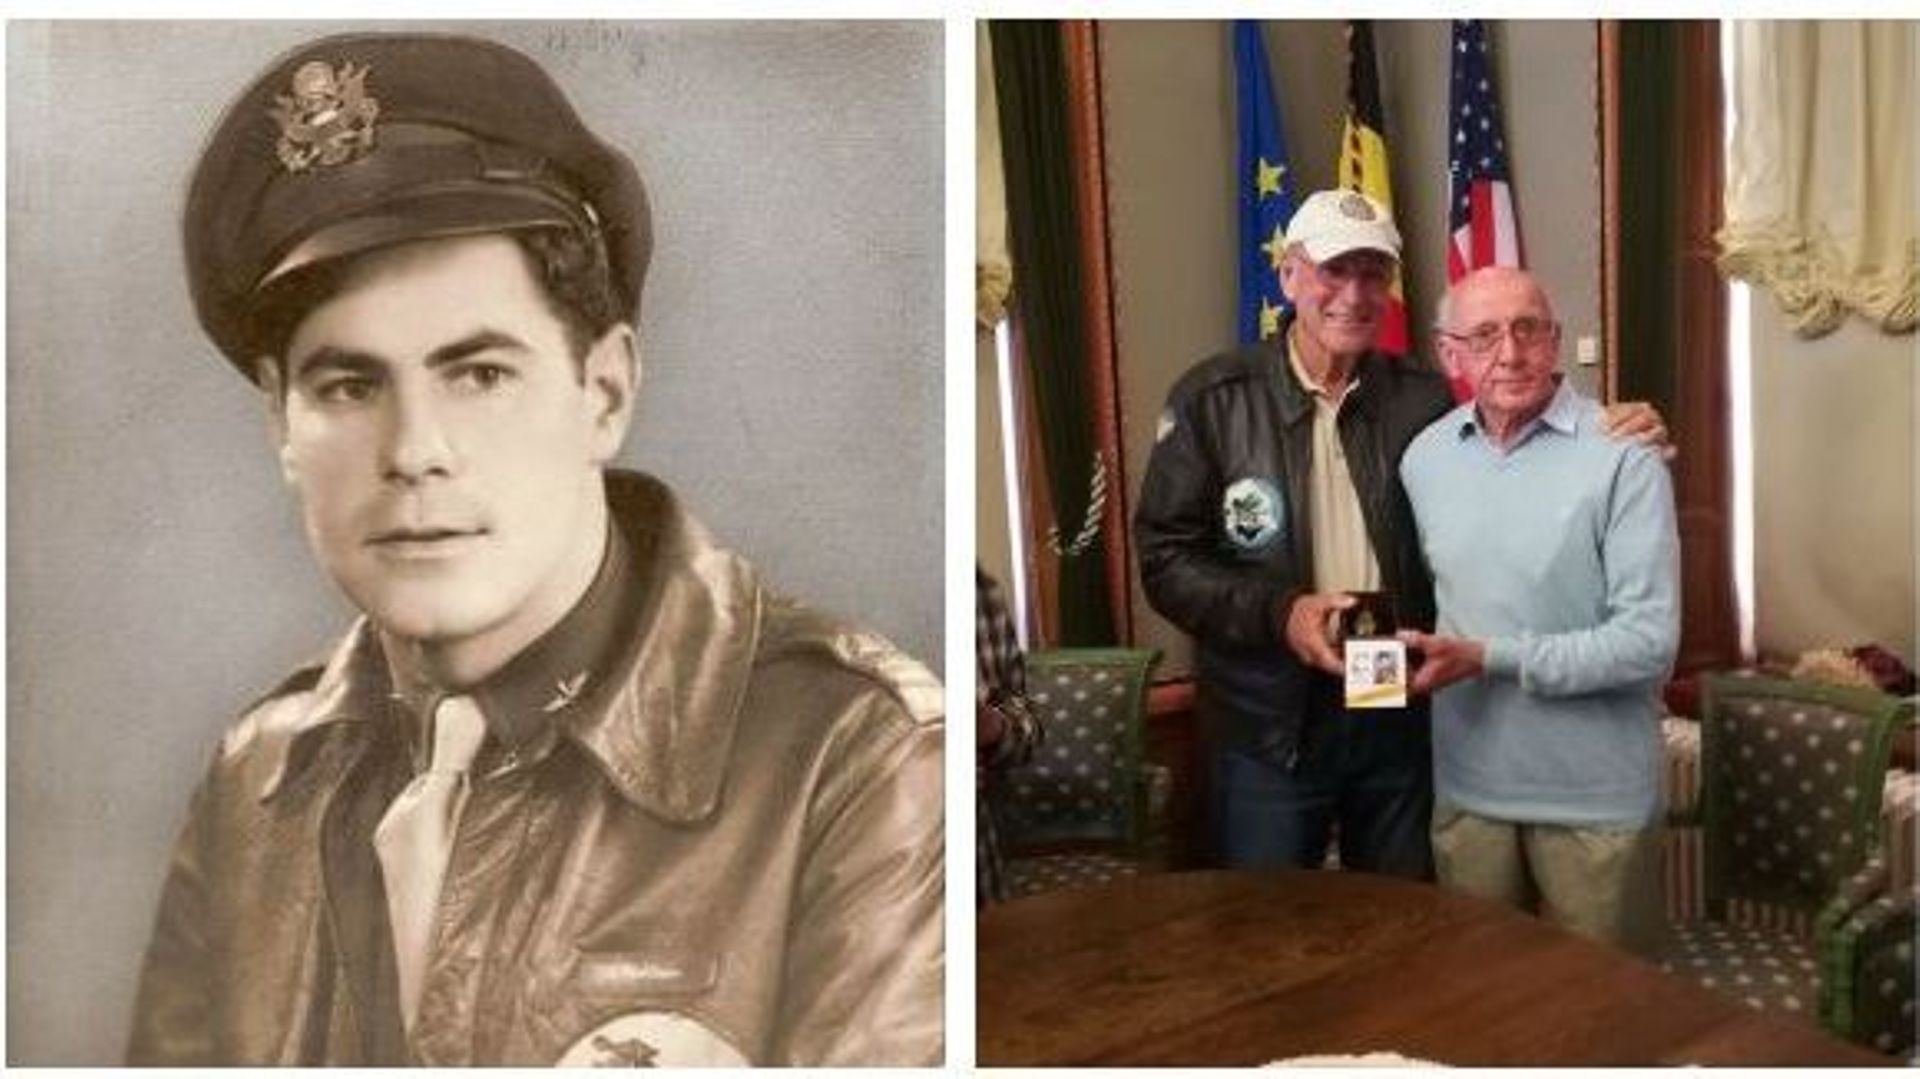 A gauche, Paul Denbo, dont l'avion a été abattu le 12 août 1944 au-dessus de Bruly; à droite Steve Snyder reçoit la montre des mains de Roger Nicolas.